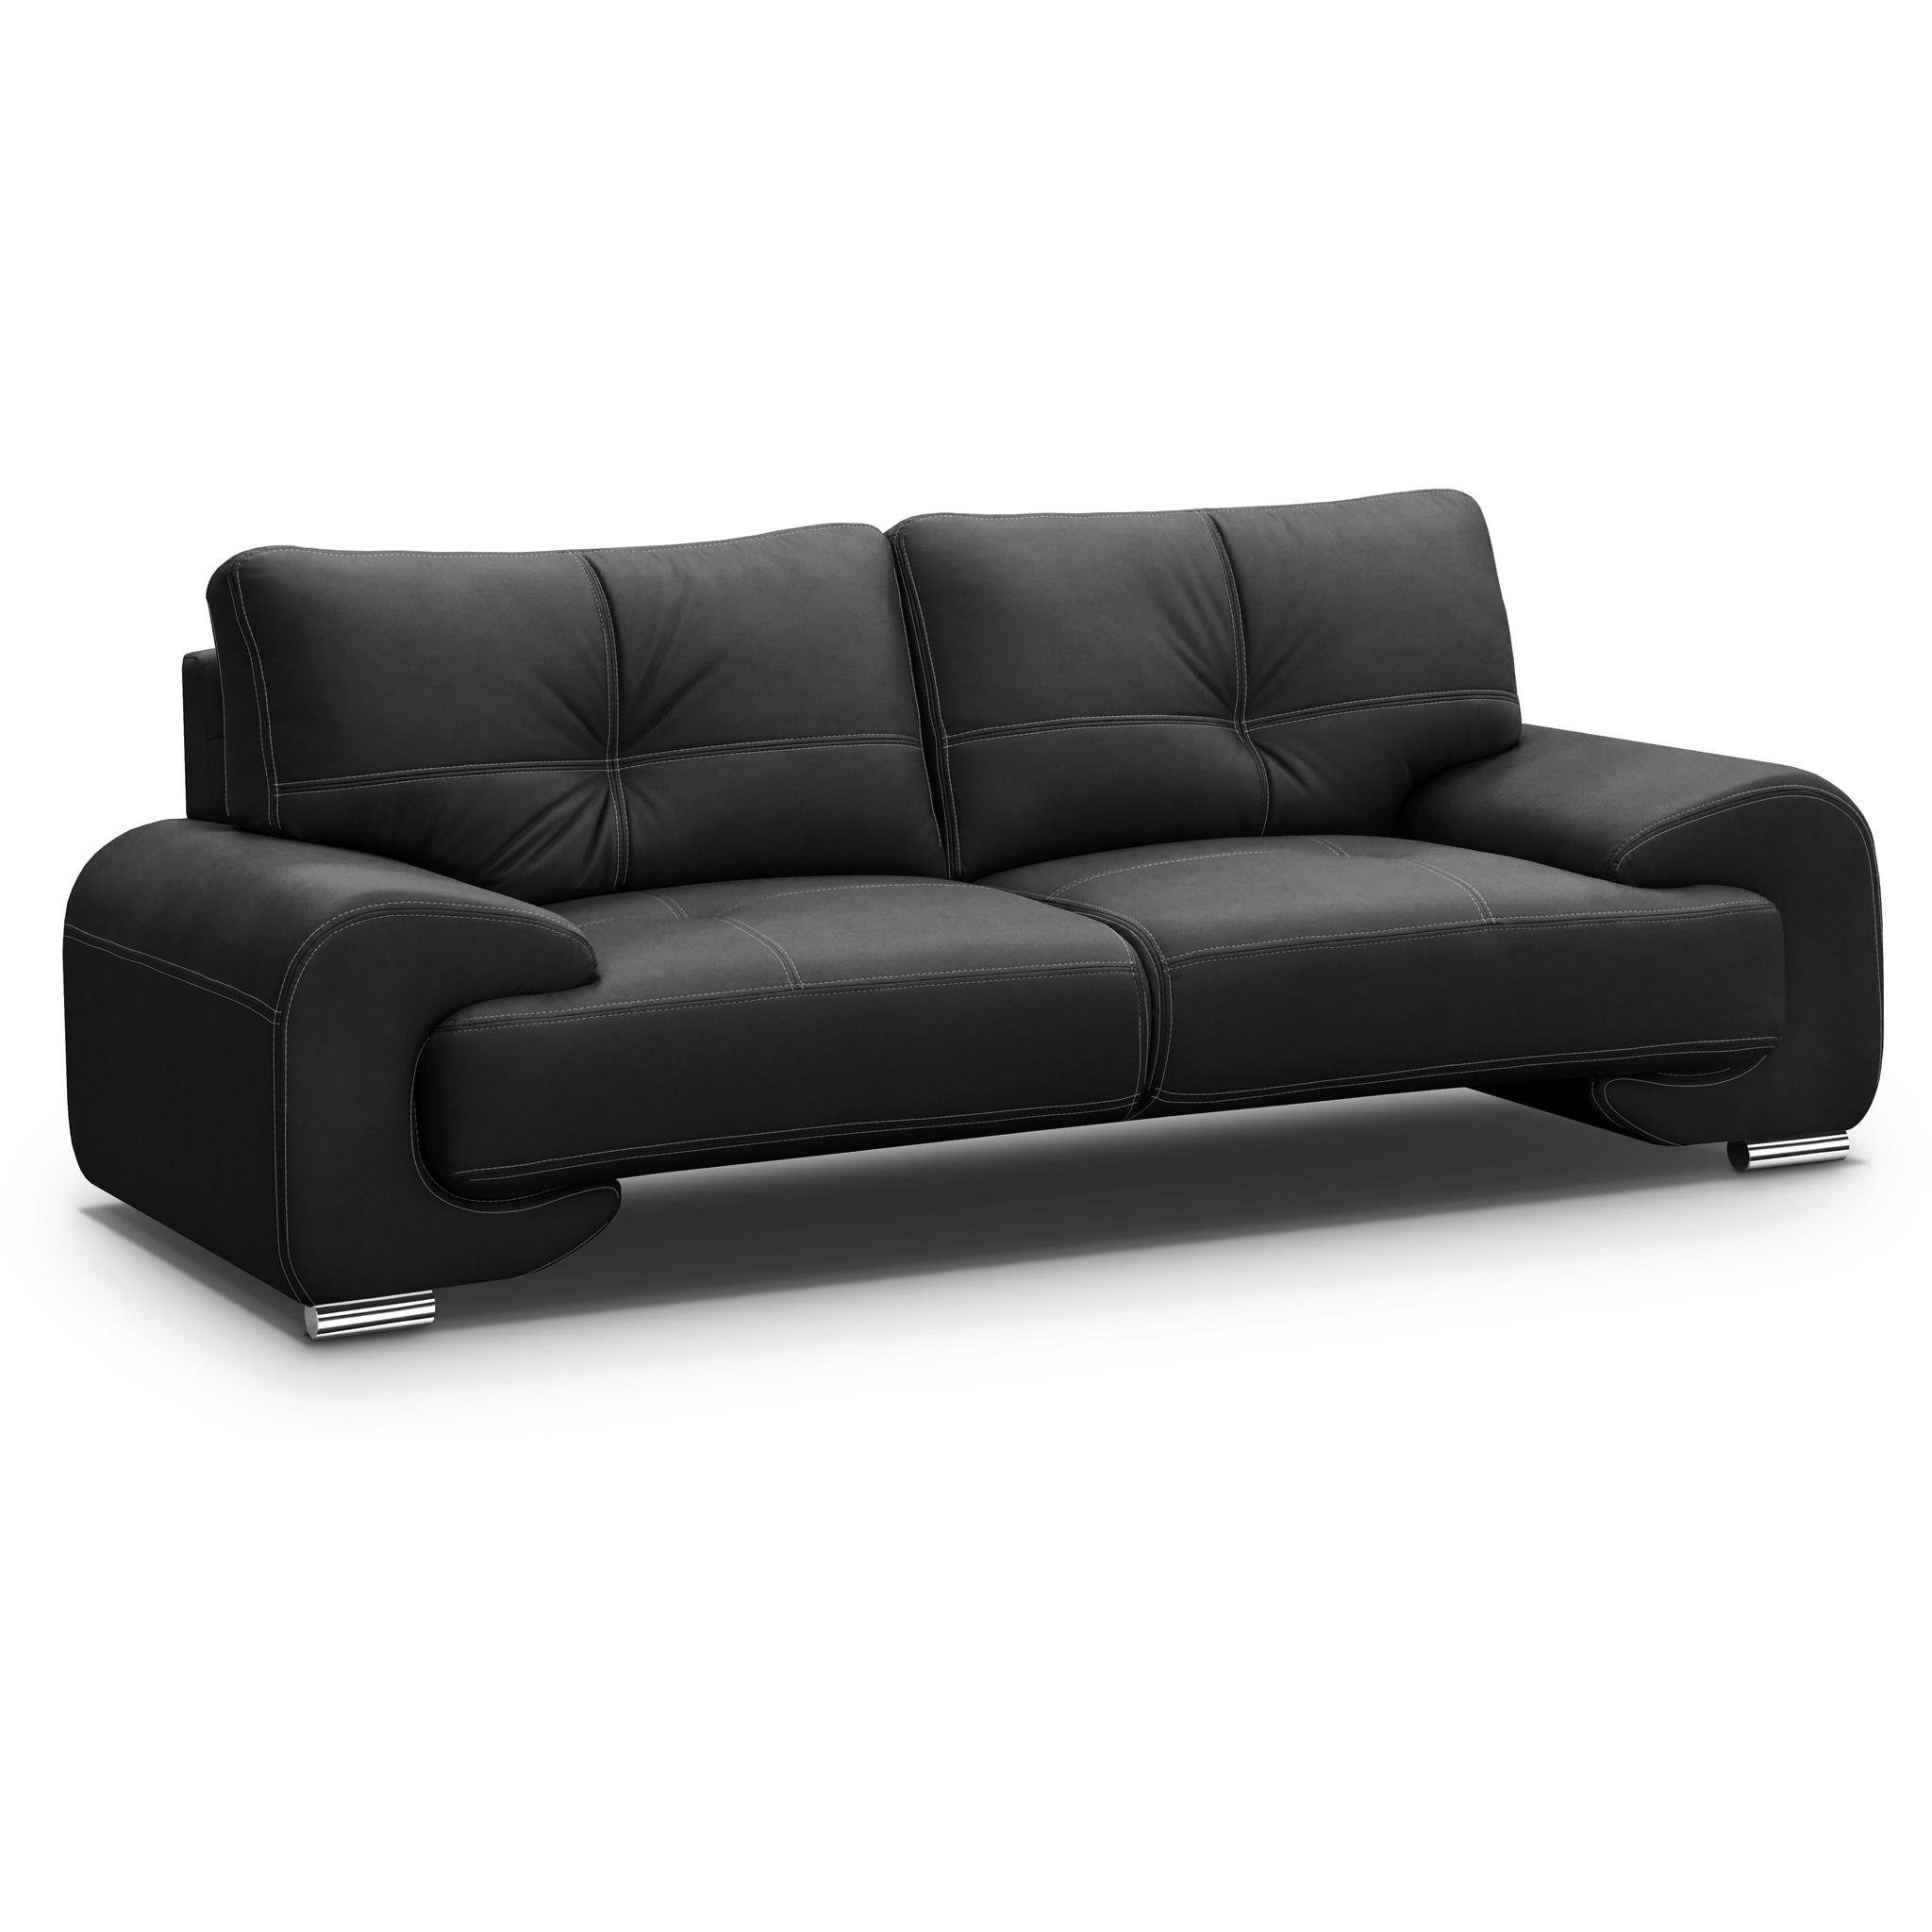 Beautysofa 3-Sitzer Maxime lux, 3-Sitzer Sofa im modernes Design, mit Wellenunterfederung, mit dekorativen Nähten, Kunstleder, Dreisitzer Schwarz (vega 99)